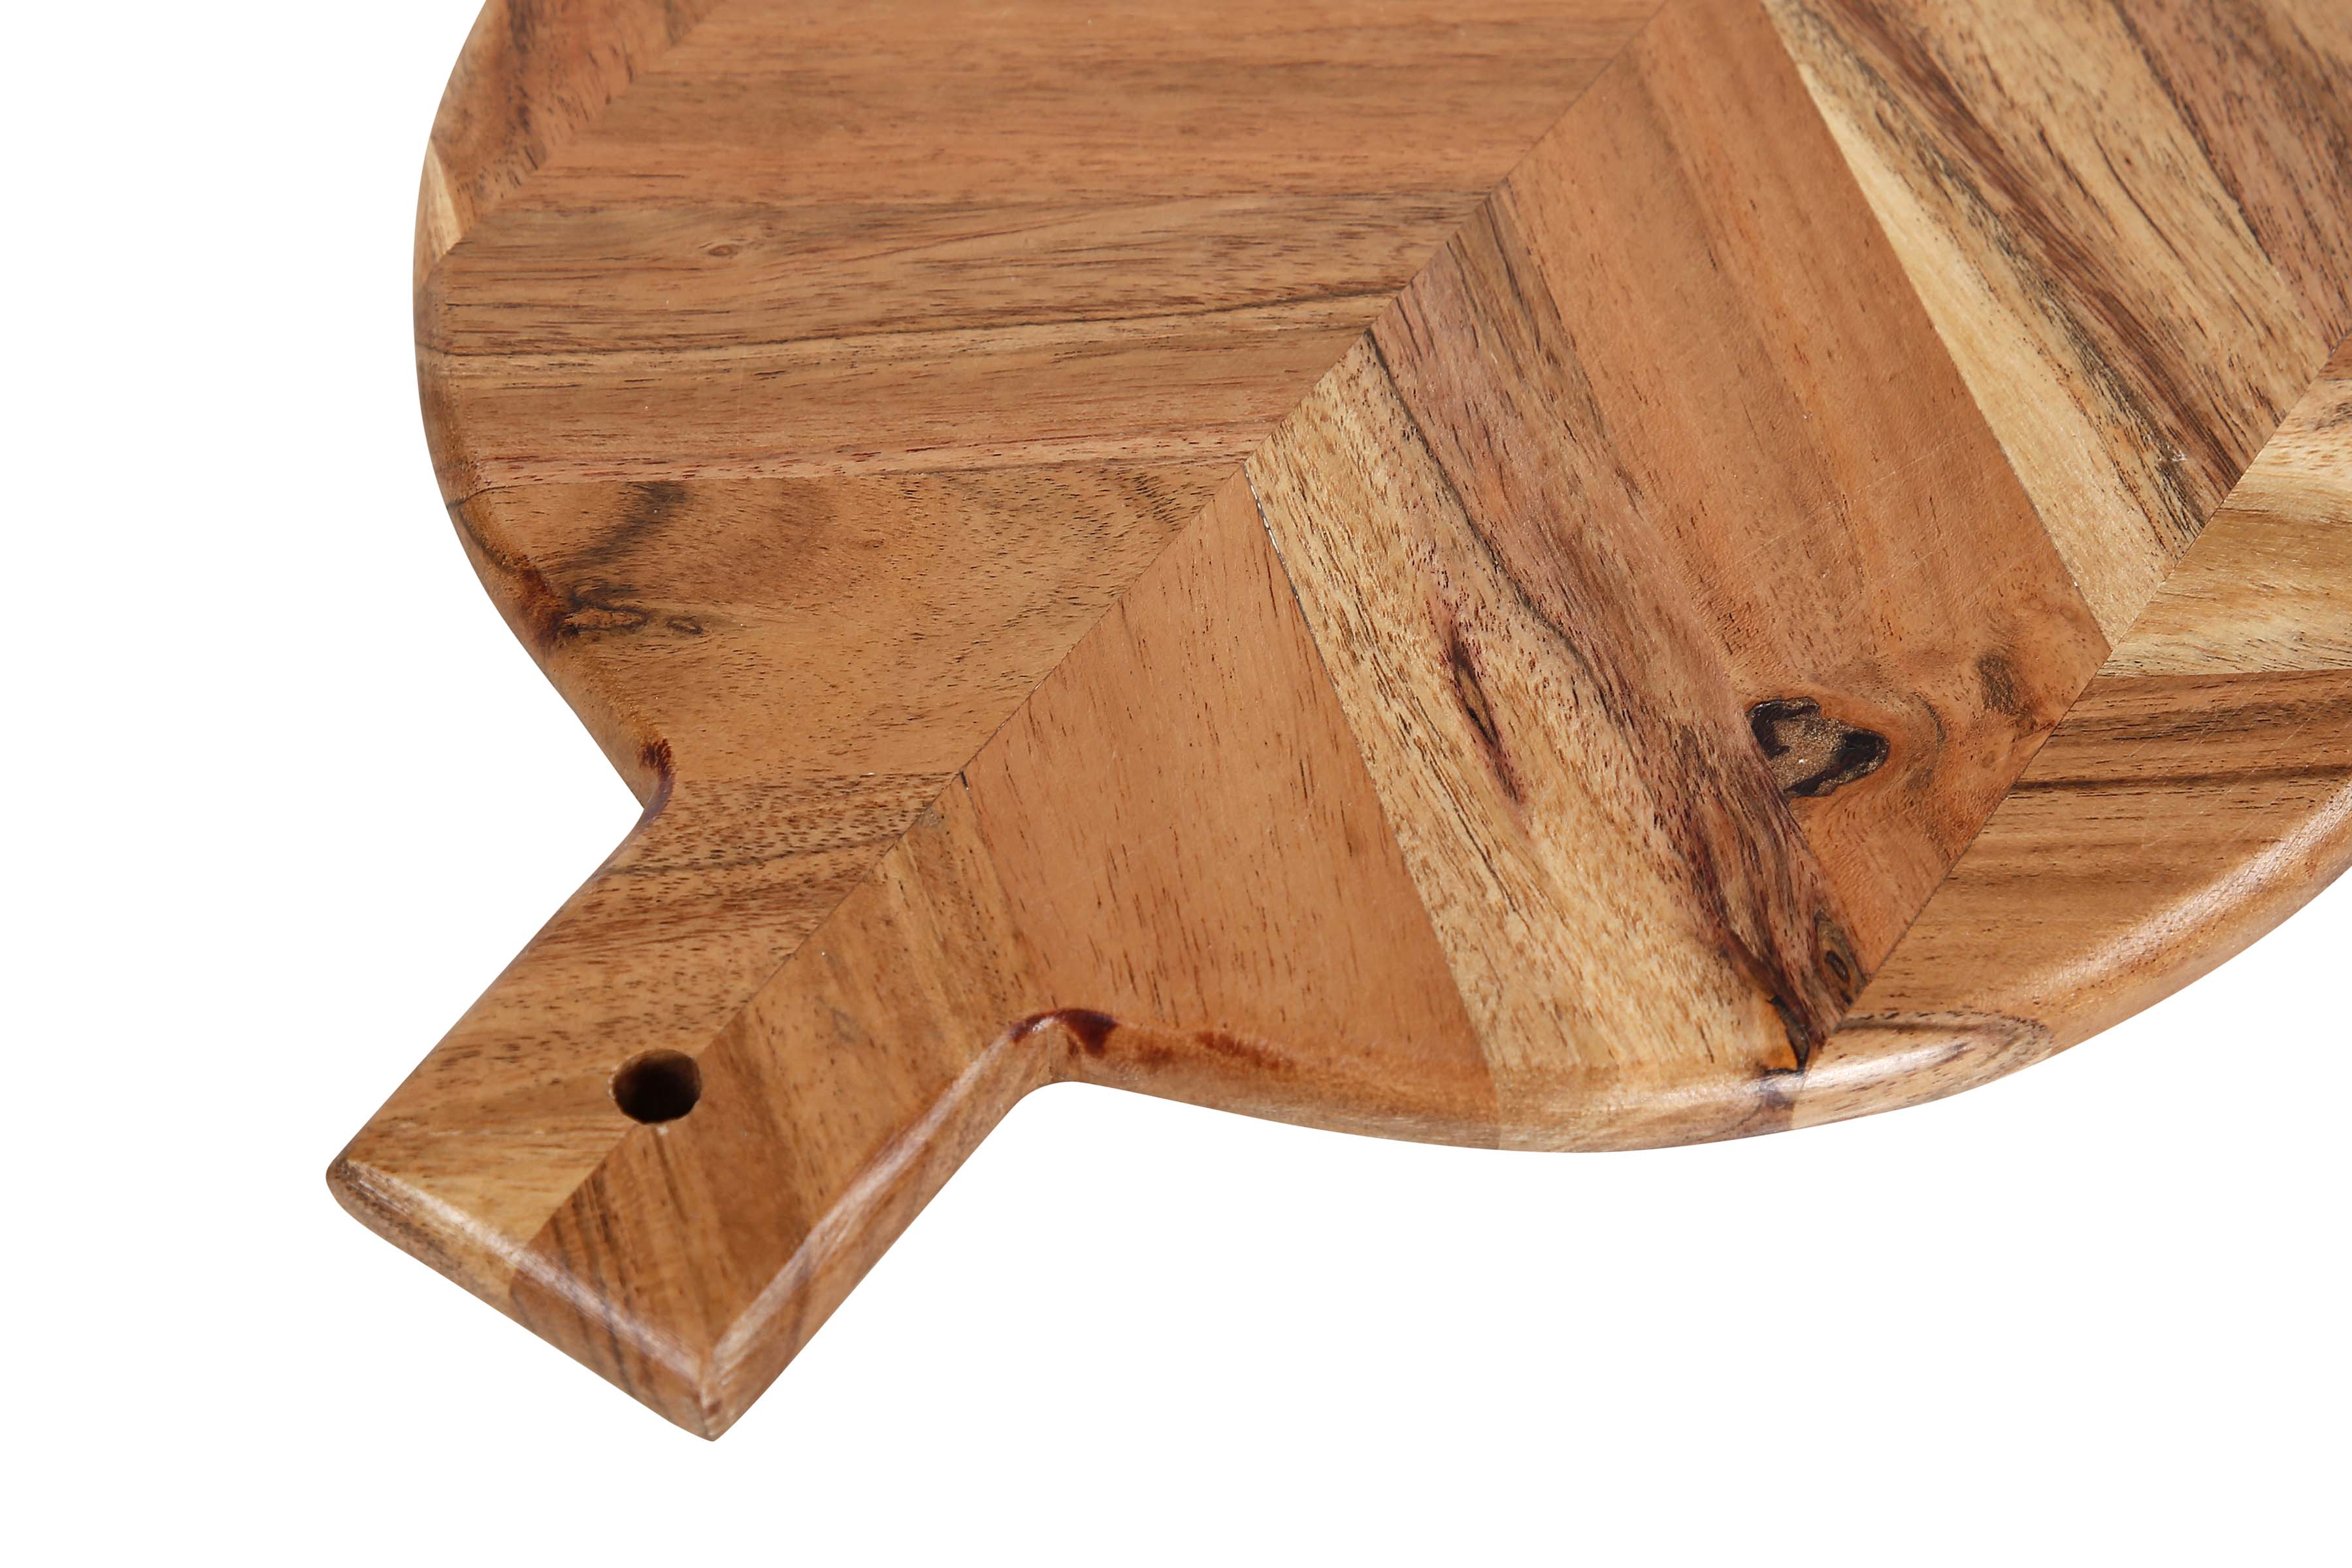 Denmark 2-Piece Acacia Wood Cutting Board Set